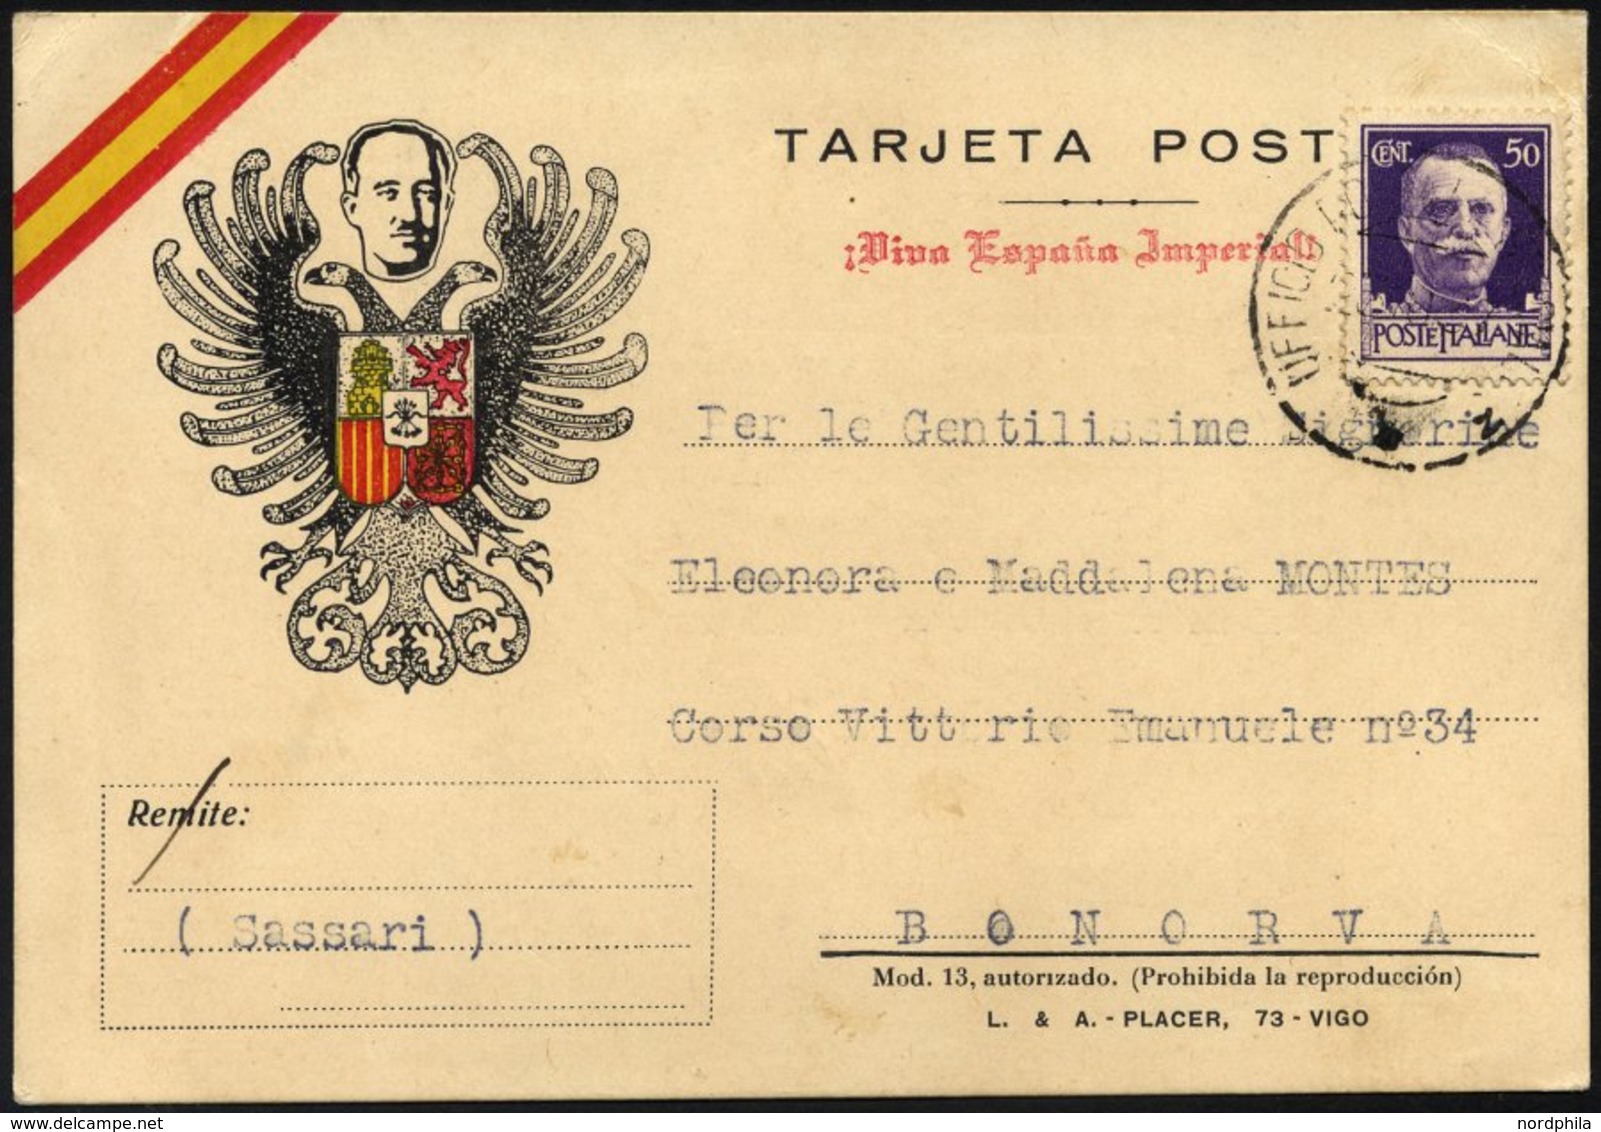 MILITÄRPOST 307 BRIEF, 1937, Propaganda-Feldpostkarte Mit Nicht Notwendiger Gebühr Von 50 C. Hellviolett, Vorderseitig P - Croce Rossa